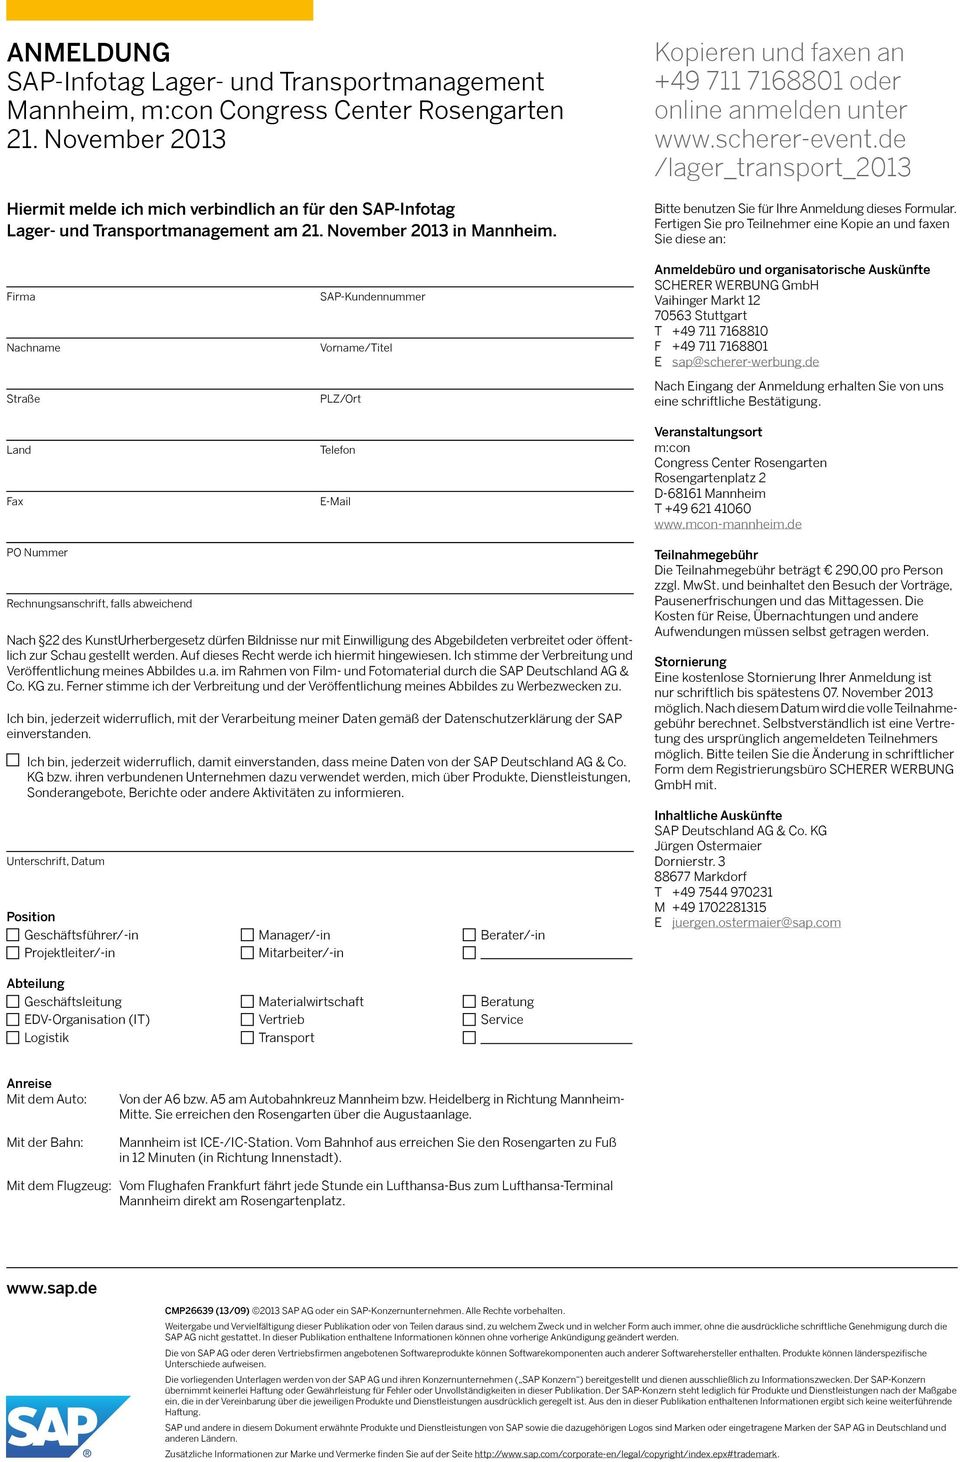 Kopieren und faxen an +49 711 7168801 oder online anmelden unter www.scherer-event.de /lager_transport_2013 Bitte benutzen Sie für Ihre Anmeldung dieses Formular.